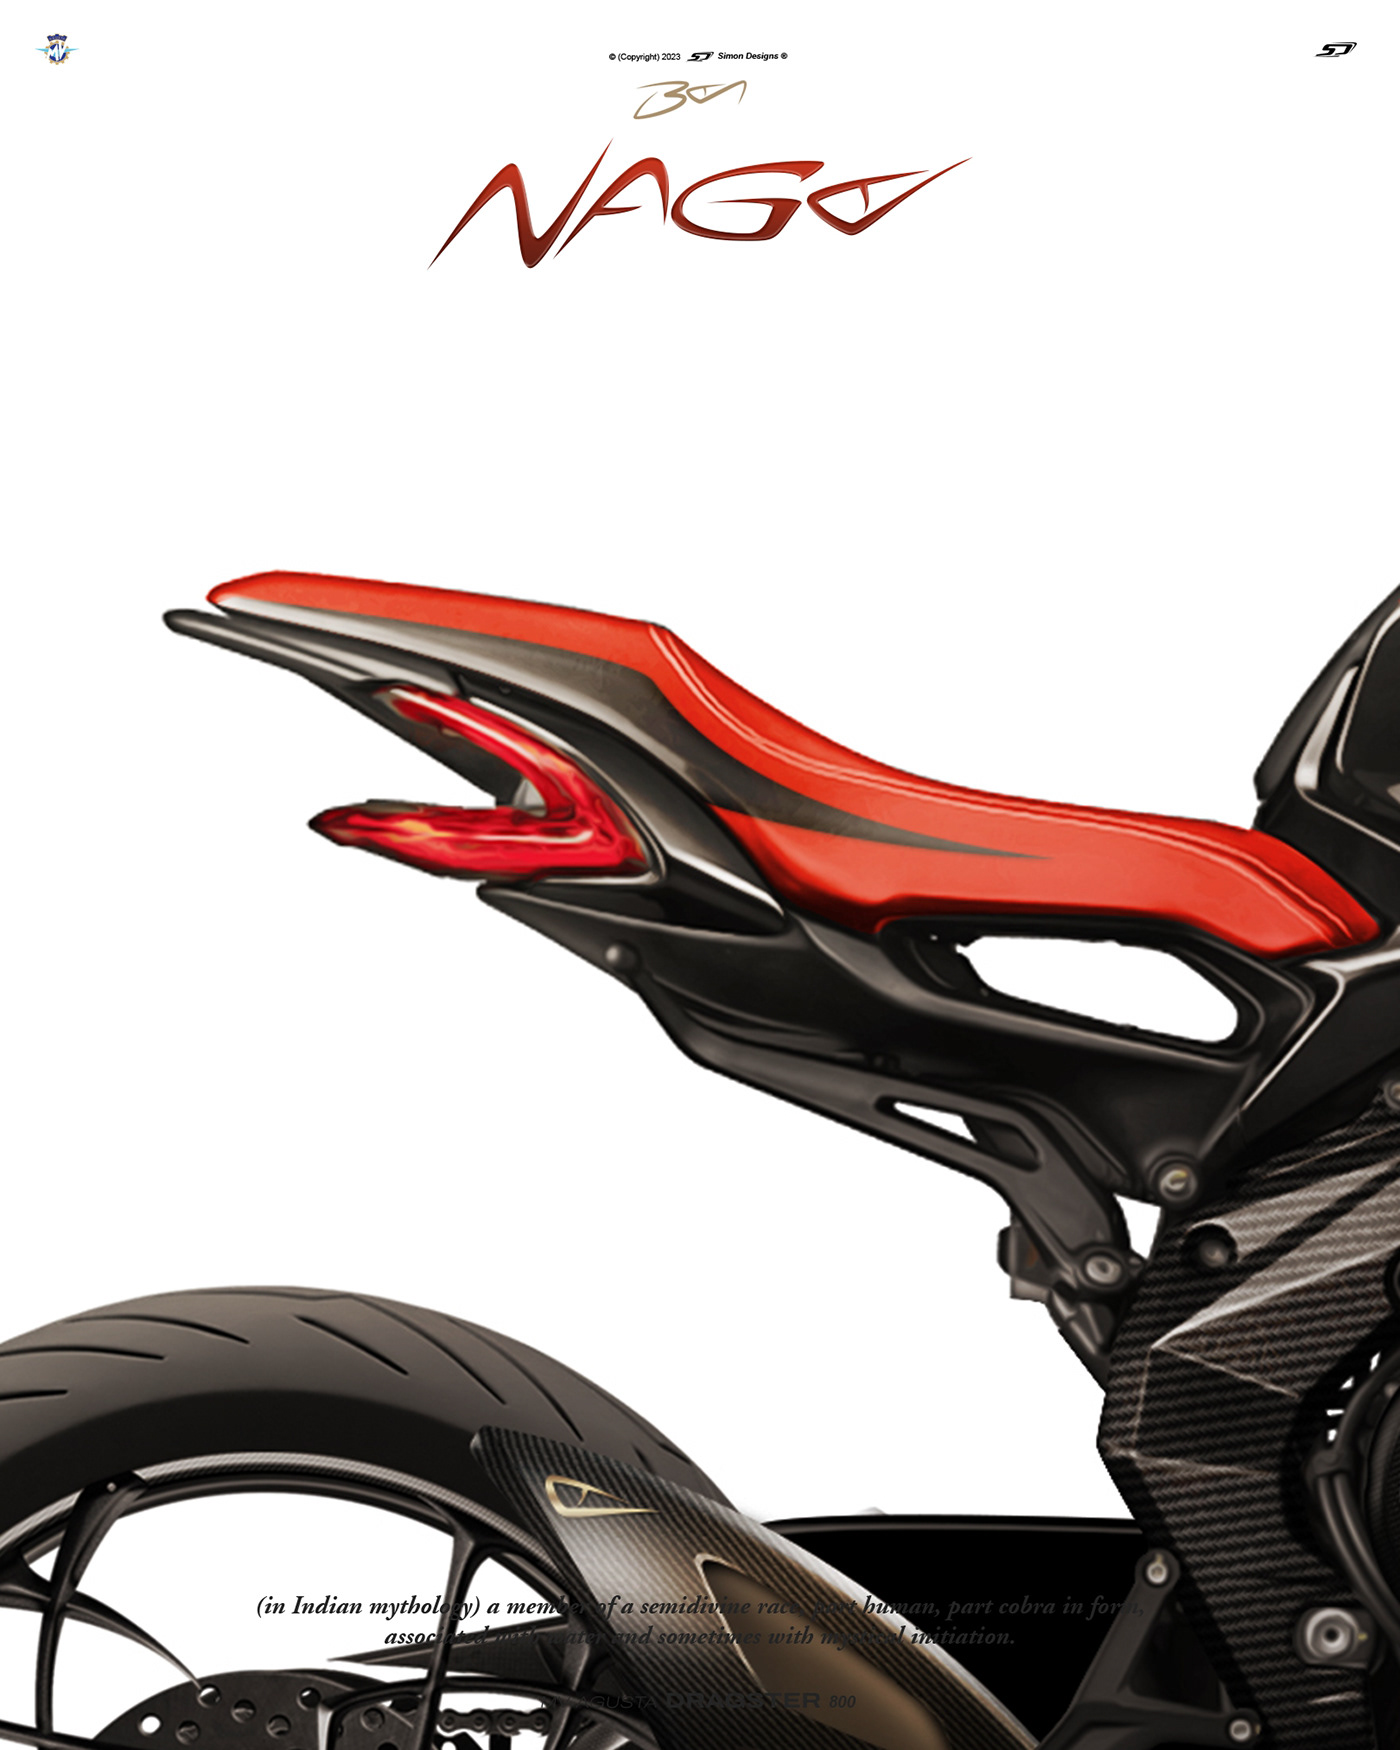 Simon Designs mv agusta motorcycle art naga boa exhaust boa naga exhaust design exhaust styling mv agusta dragster